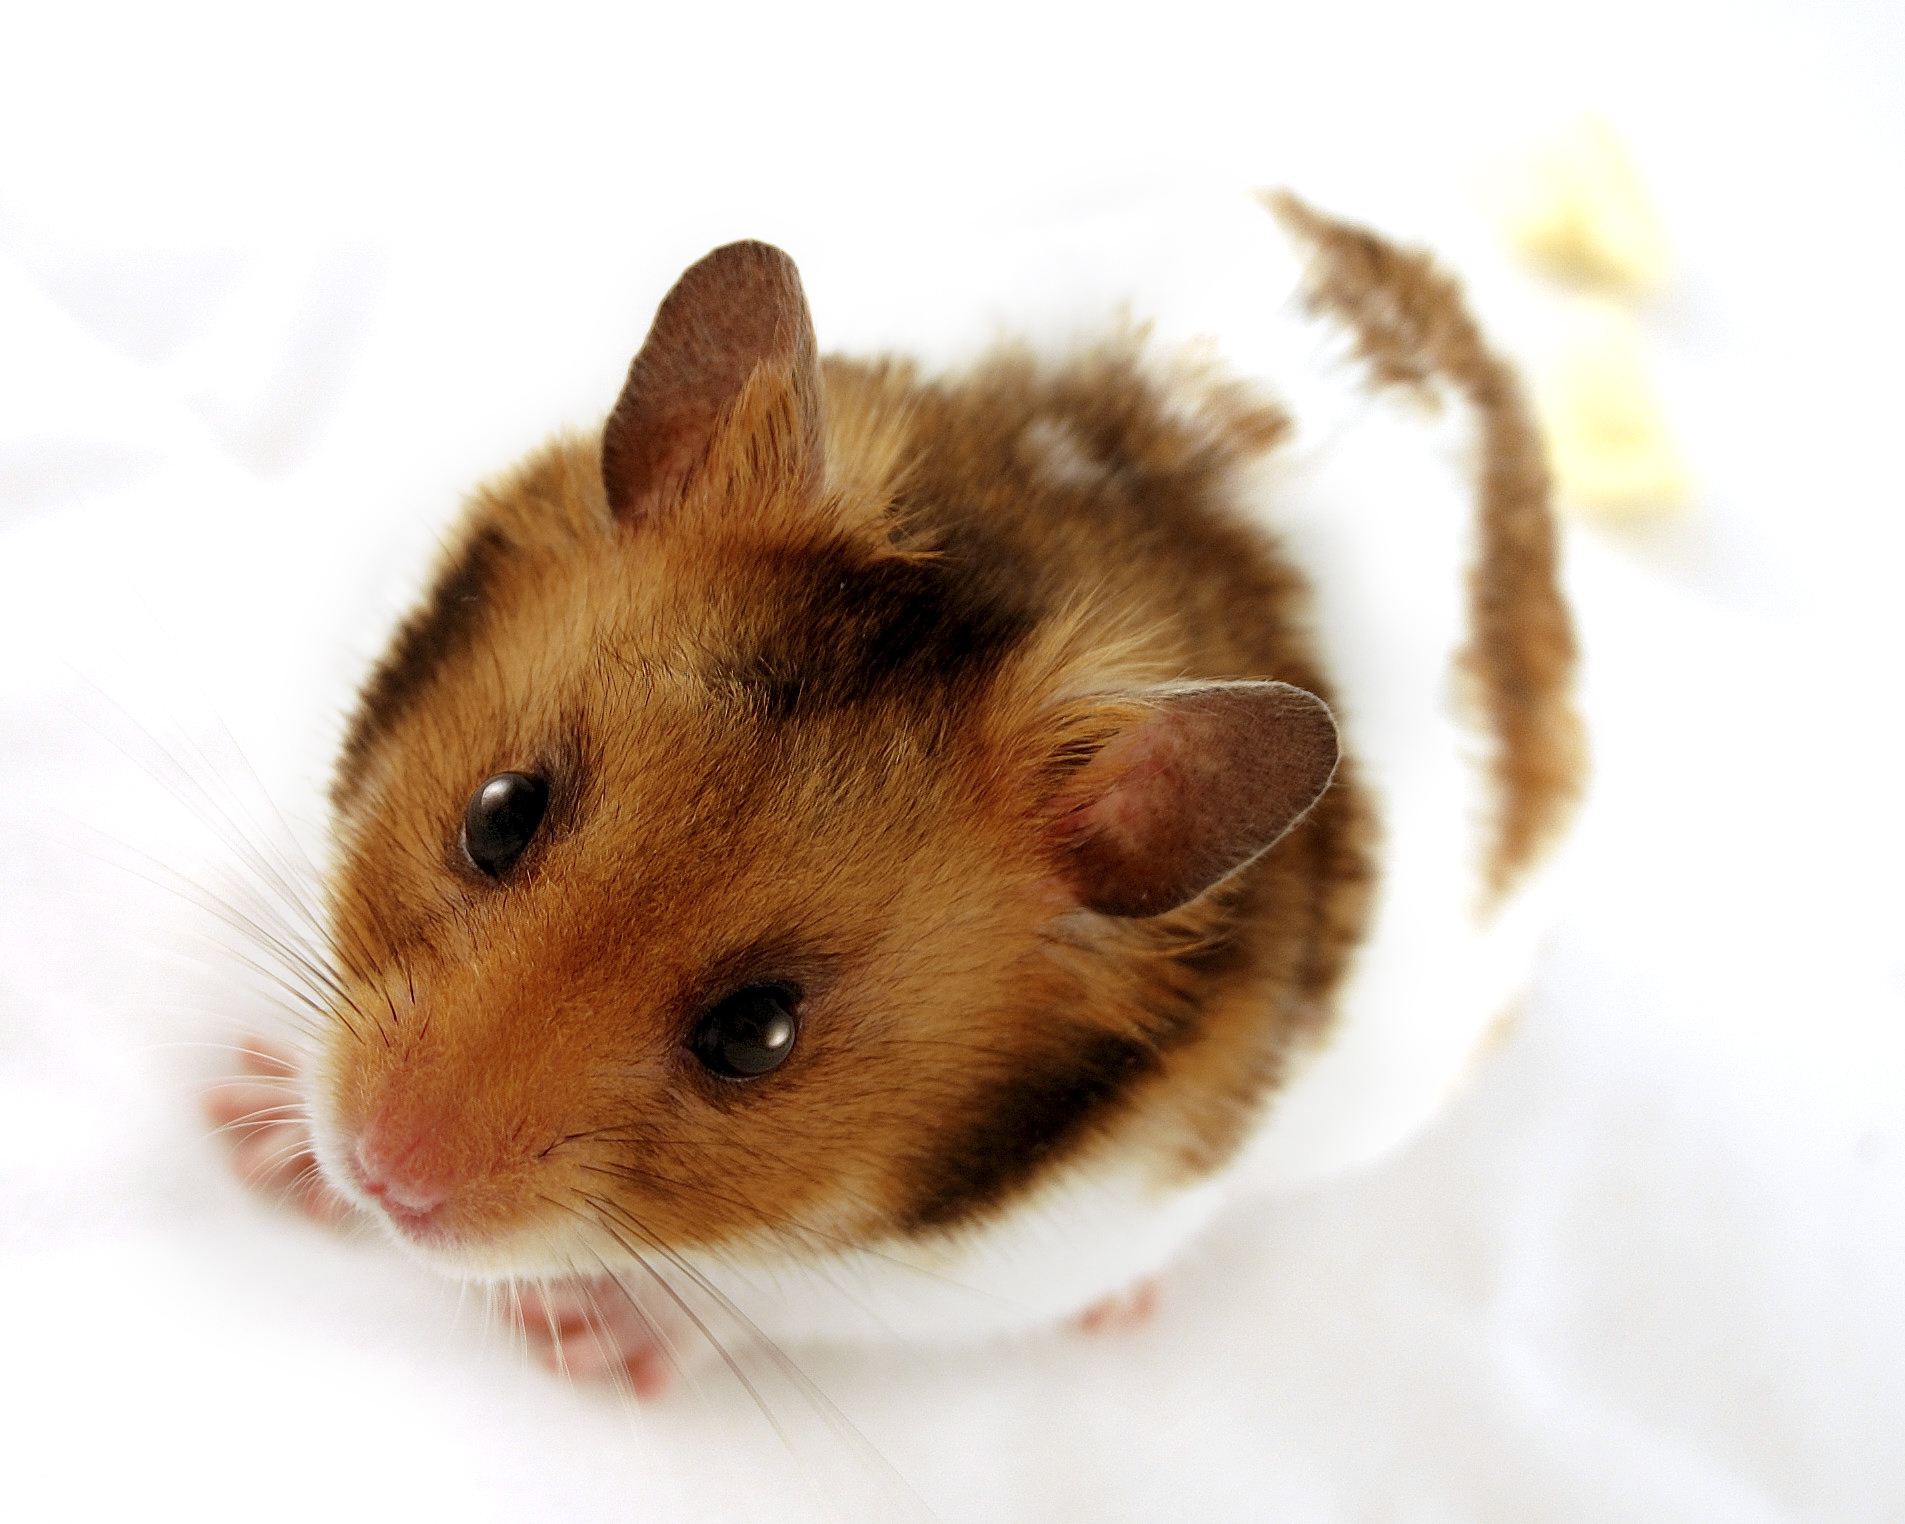 Résultat d’images pour image d'hamster russe